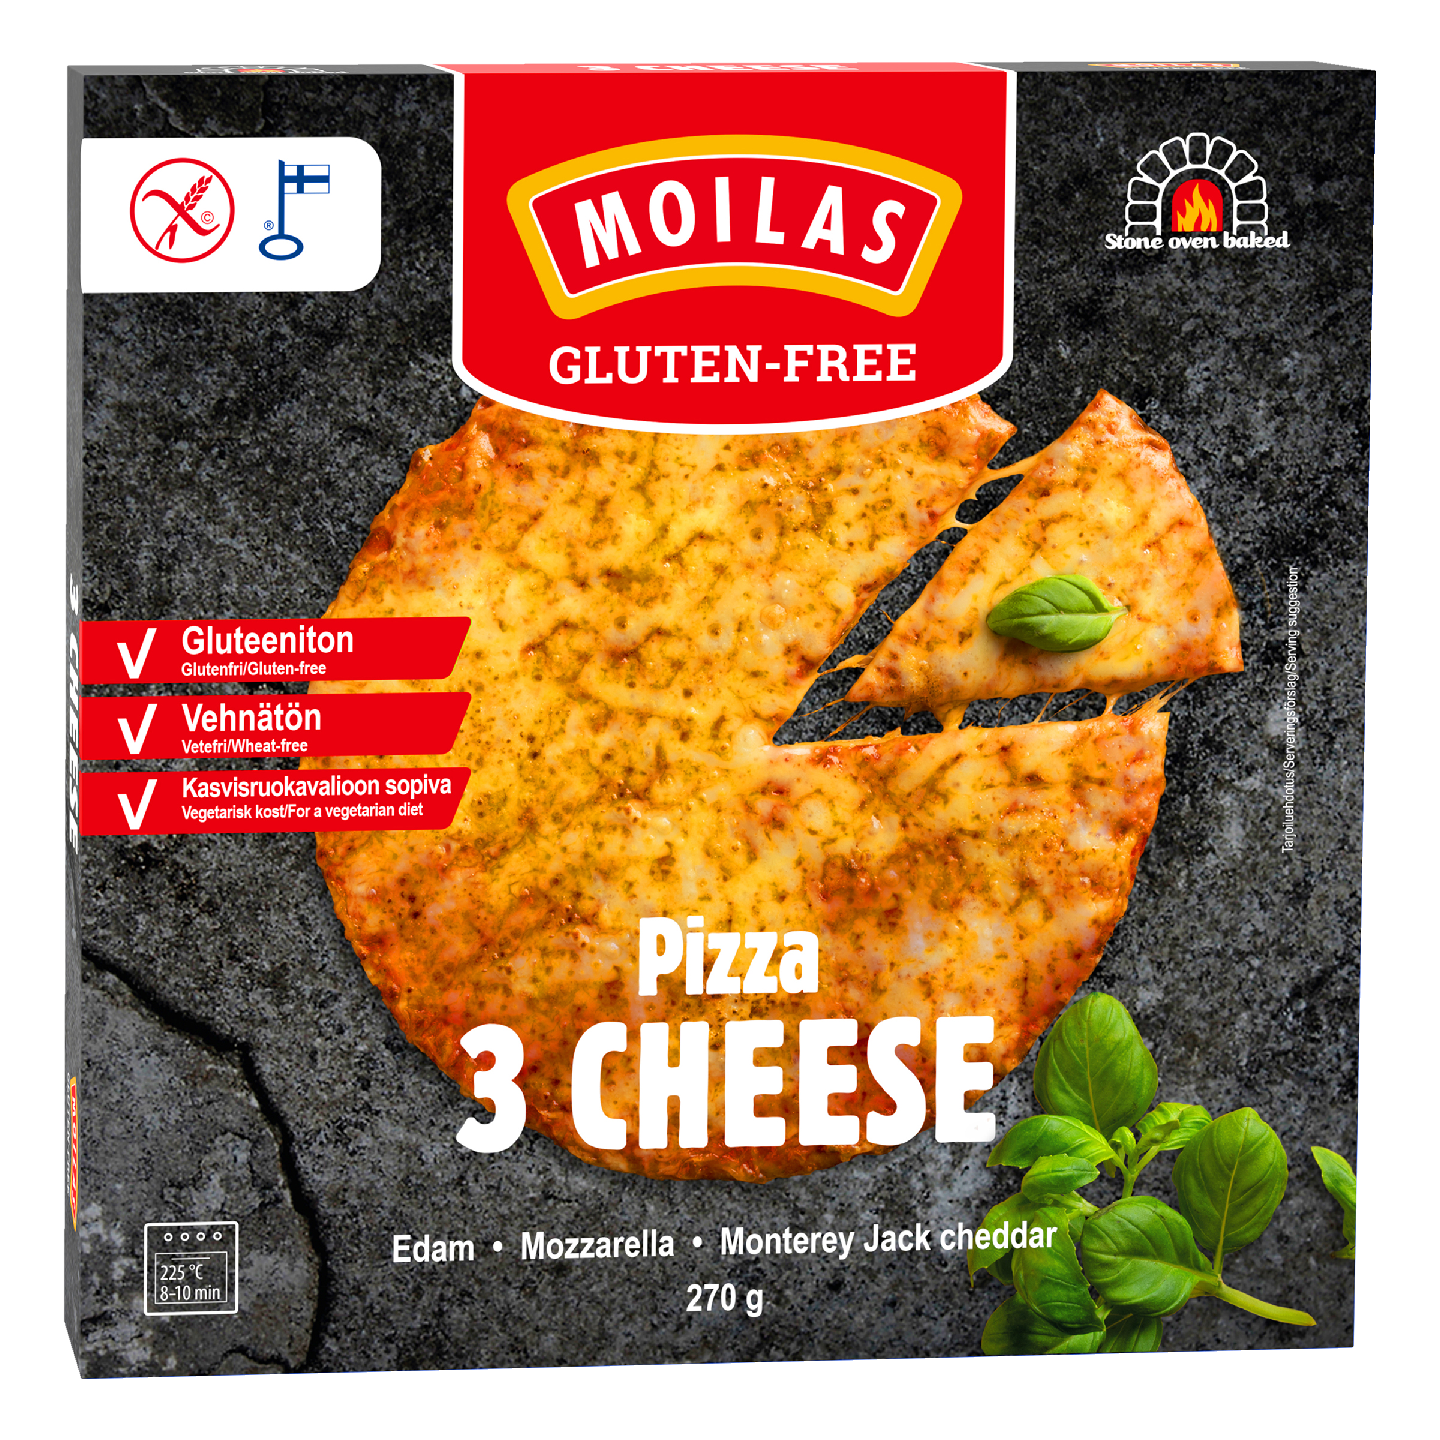 Moilas Gluten-Free 3 Cheese pizza 270g gluteeniton pakaste — HoReCa-tukku  Kespro